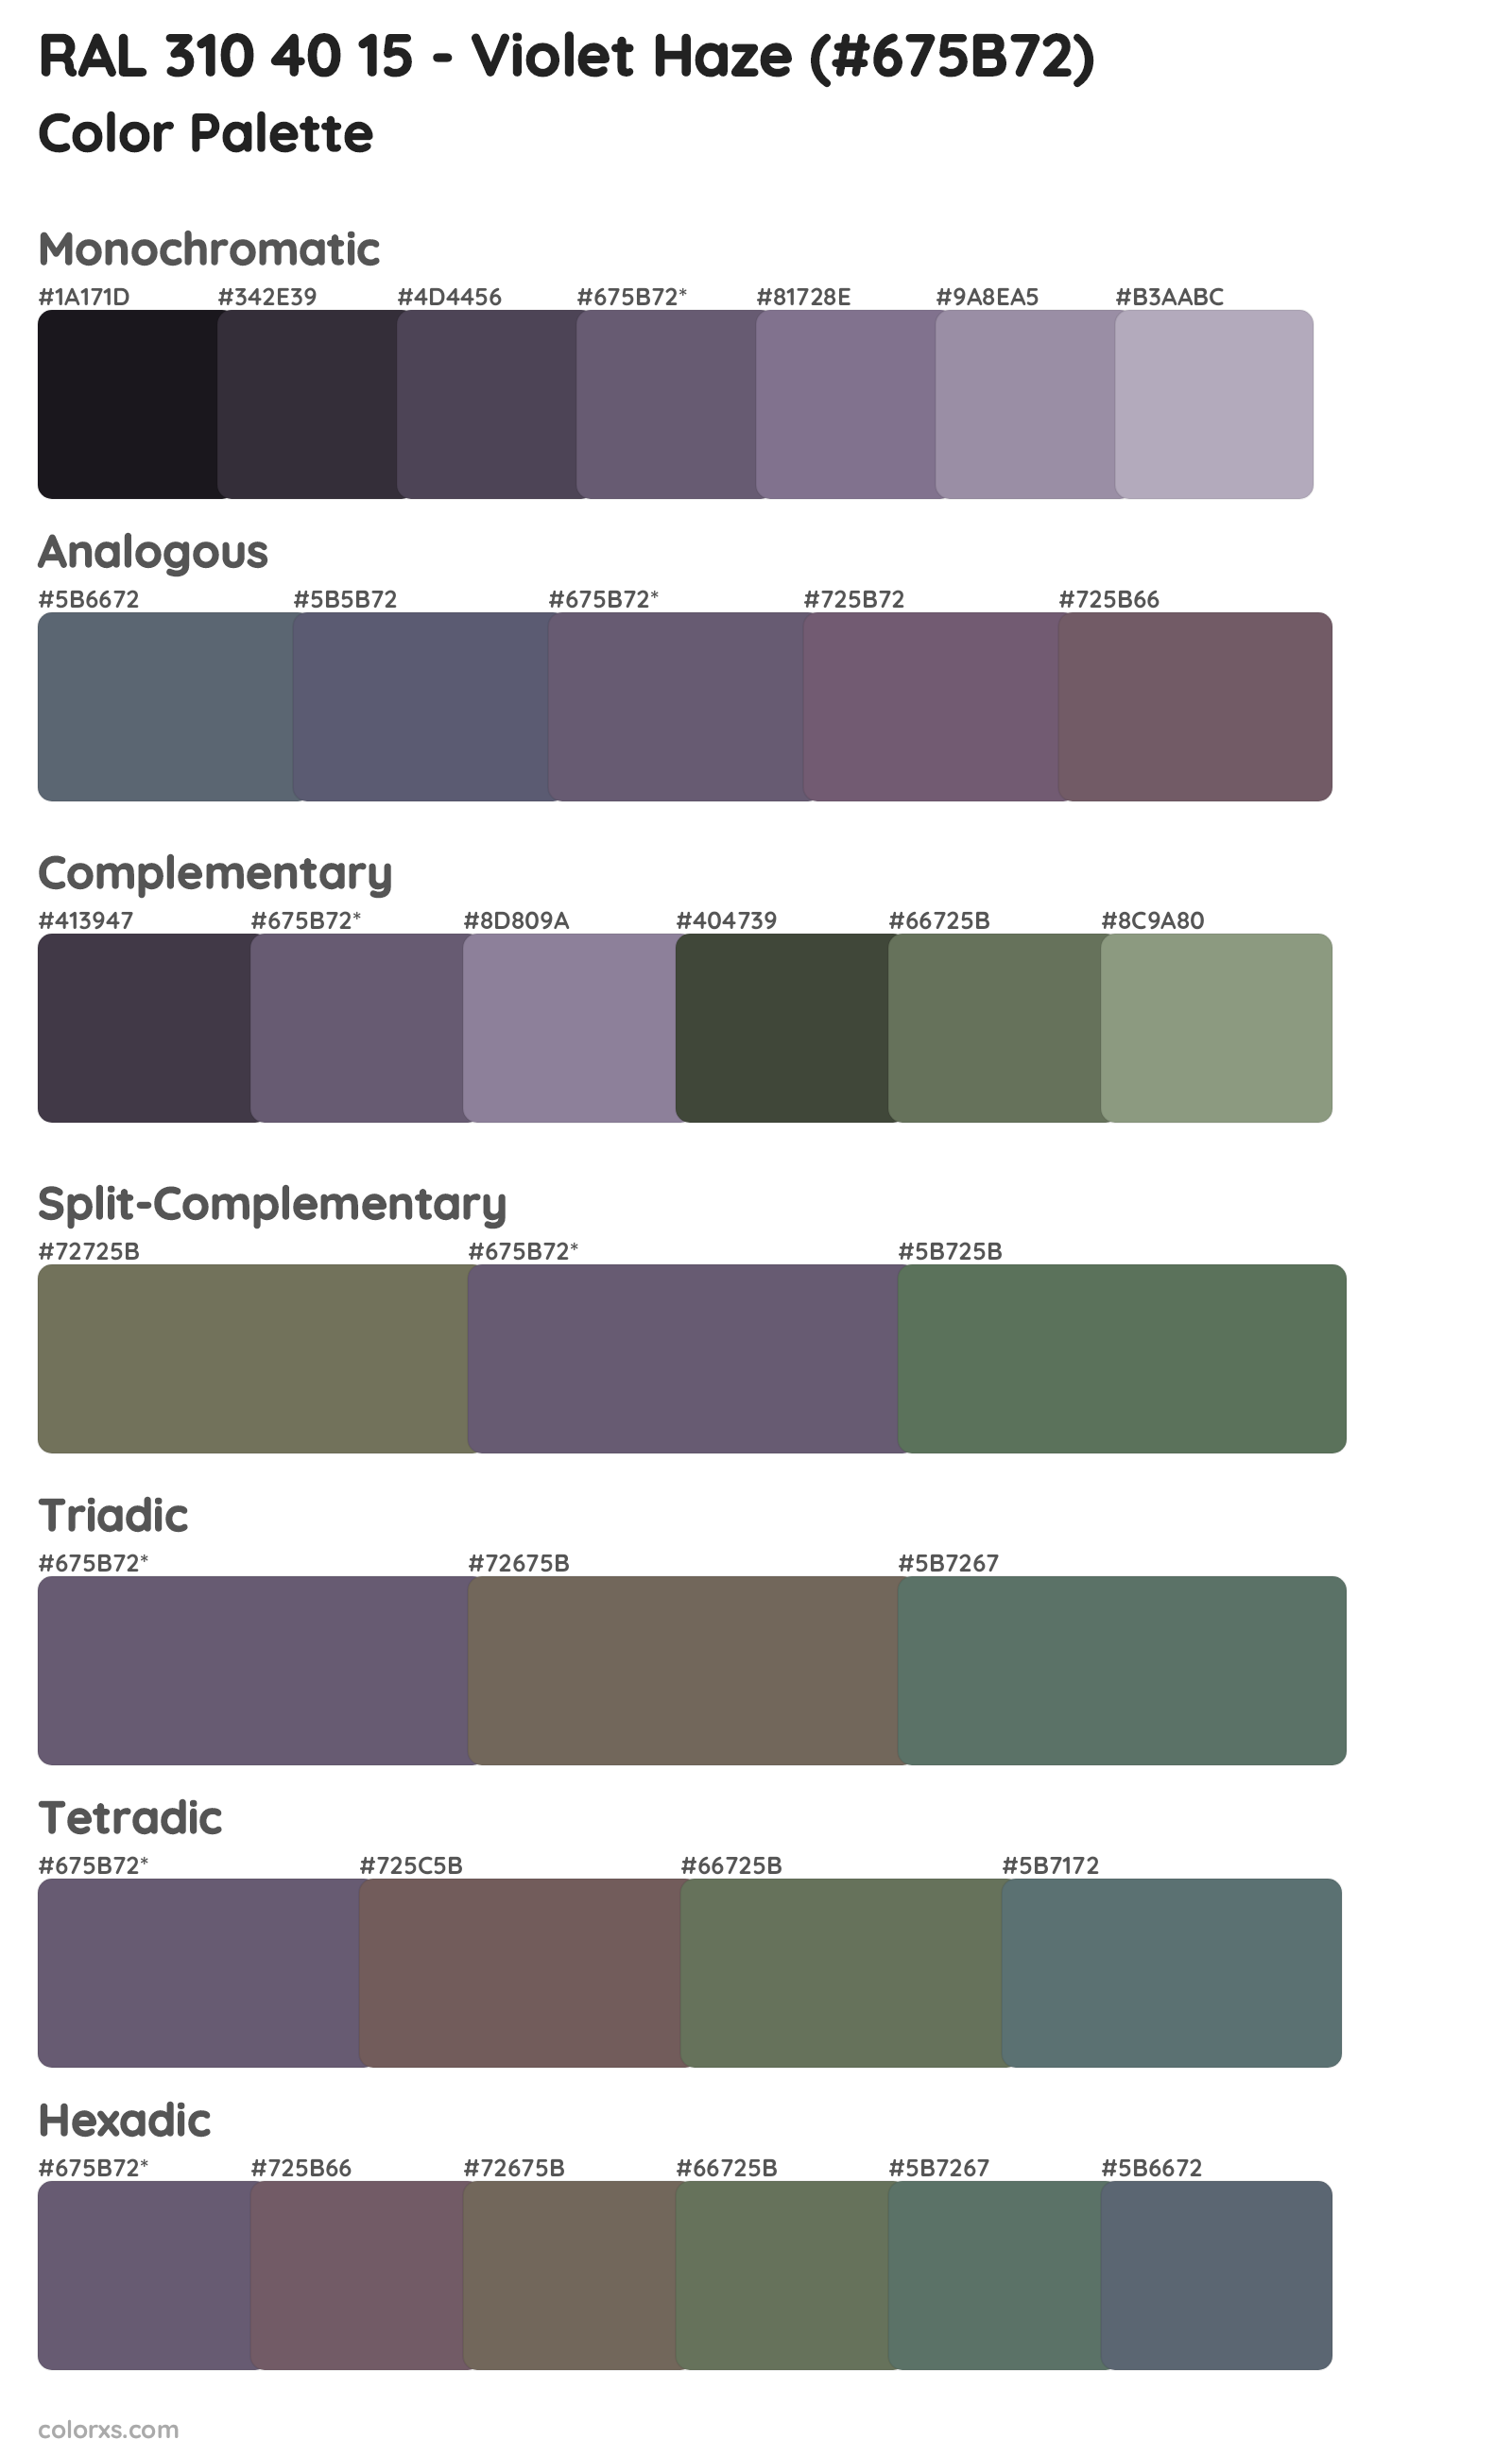 RAL 310 40 15 - Violet Haze Color Scheme Palettes